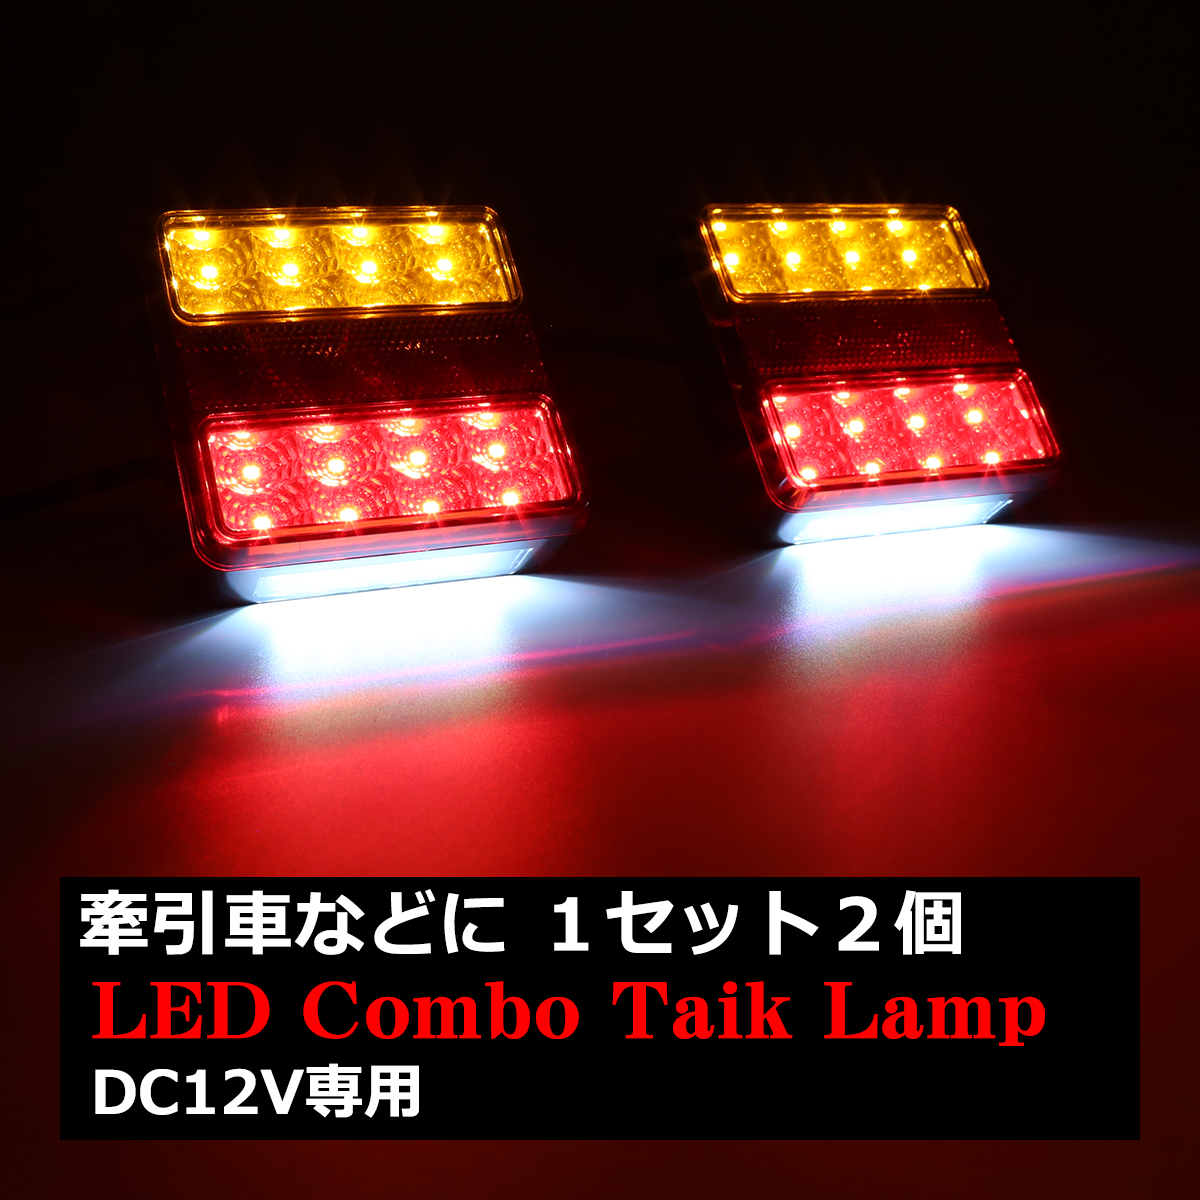 DC12V 角型 LEDテールランプ ウインカー/リフレクター搭載 汎用 ダウンライト付き ボートトレーラー 増設に 2個セット FZ255